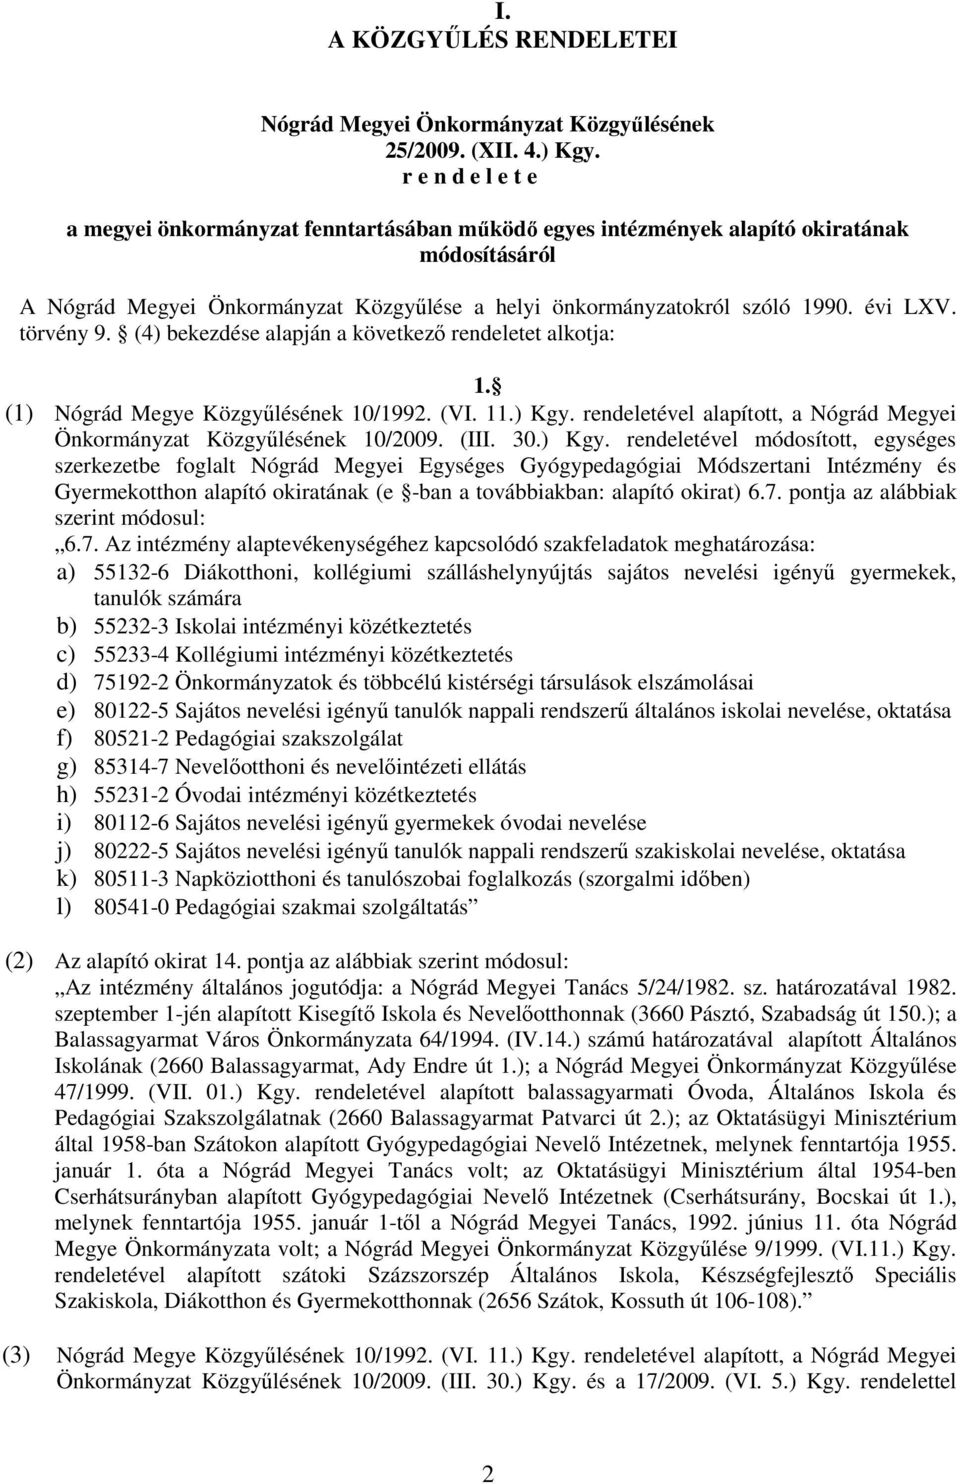 törvény 9. (4) bekezdése alapján a következı rendeletet alkotja: 1. (1) Nógrád Megye Közgyőlésének 10/1992. (VI. 11.) Kgy. rendeletével alapított, a Nógrád Megyei Önkormányzat Közgyőlésének 10/2009.